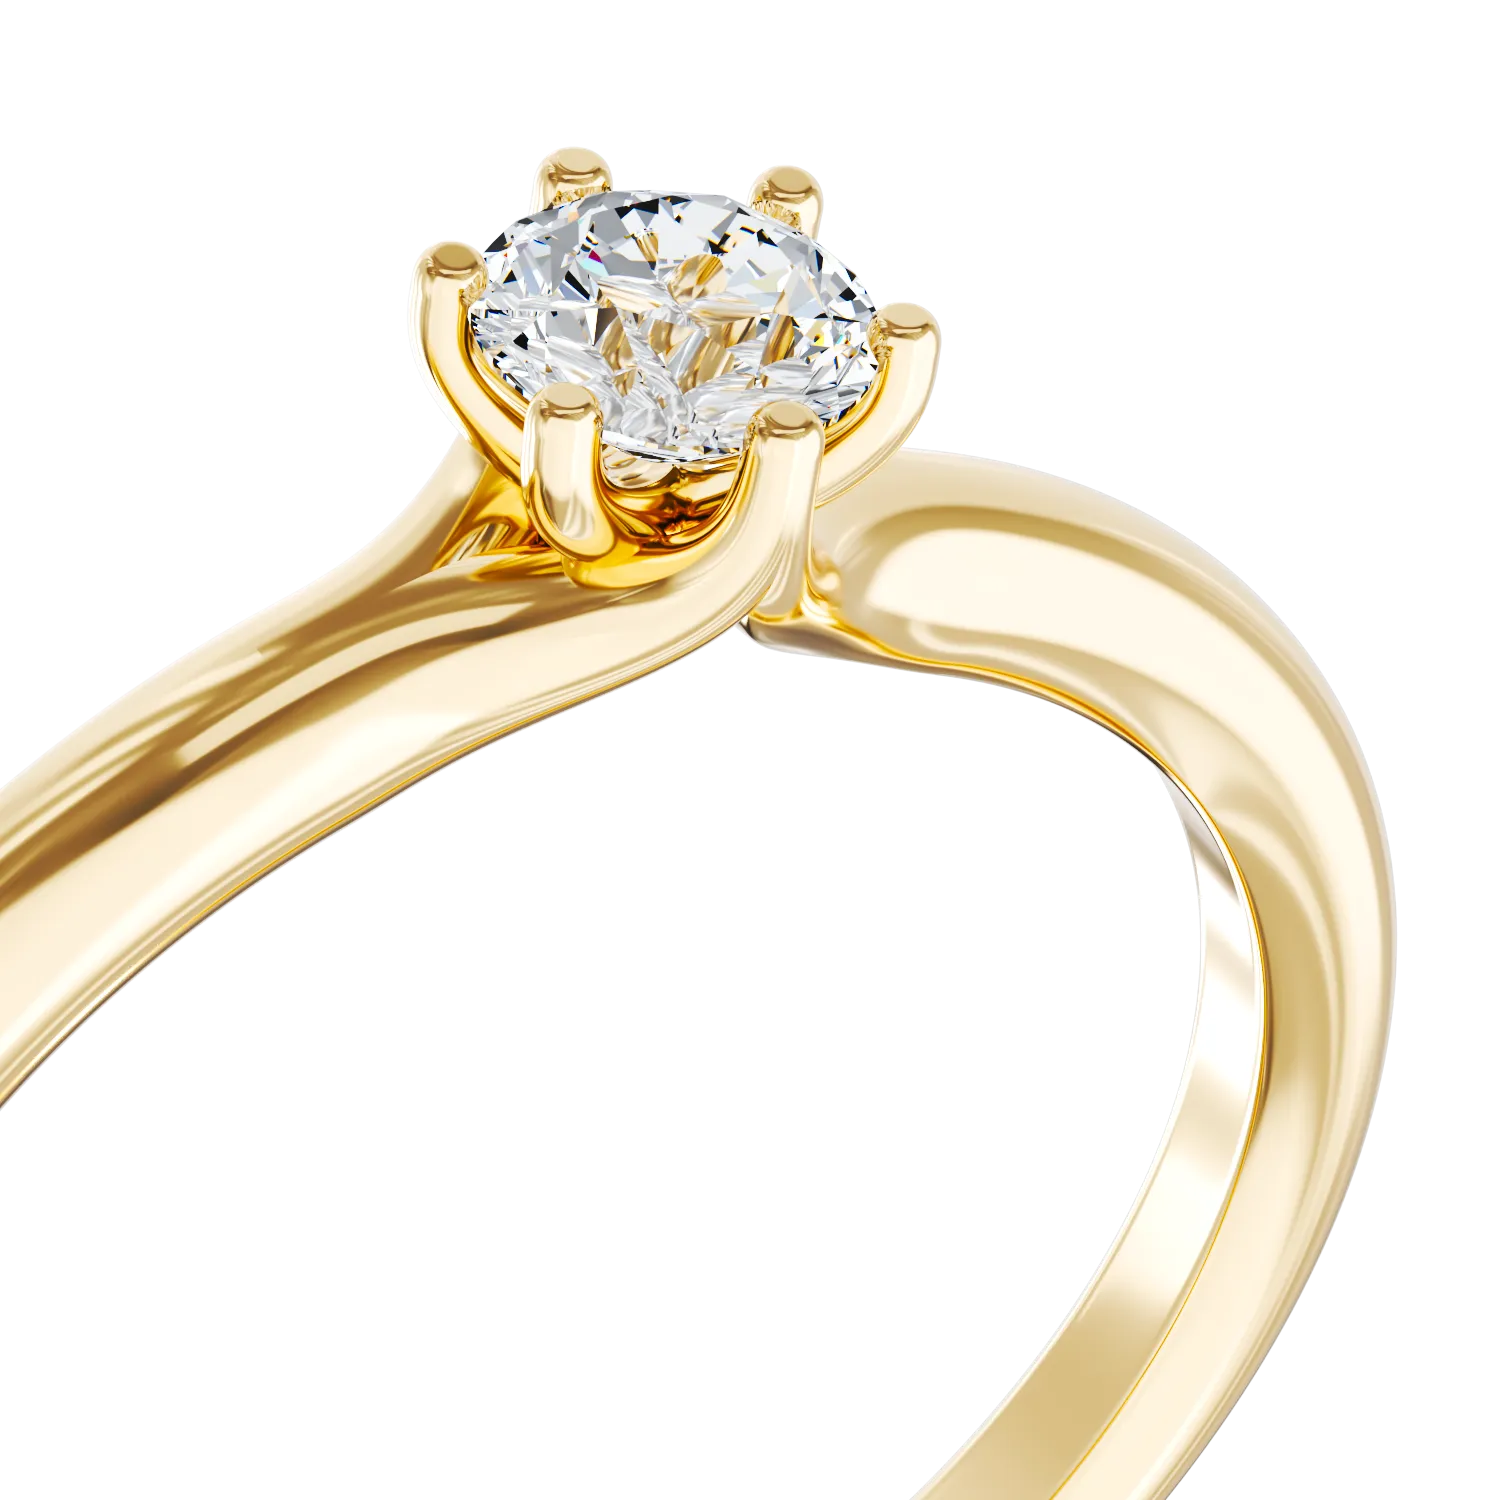 Eljegyzési gyűrű 18K-os sárga aranyból 0,25ct gyémánttal. Gramm: 2,2